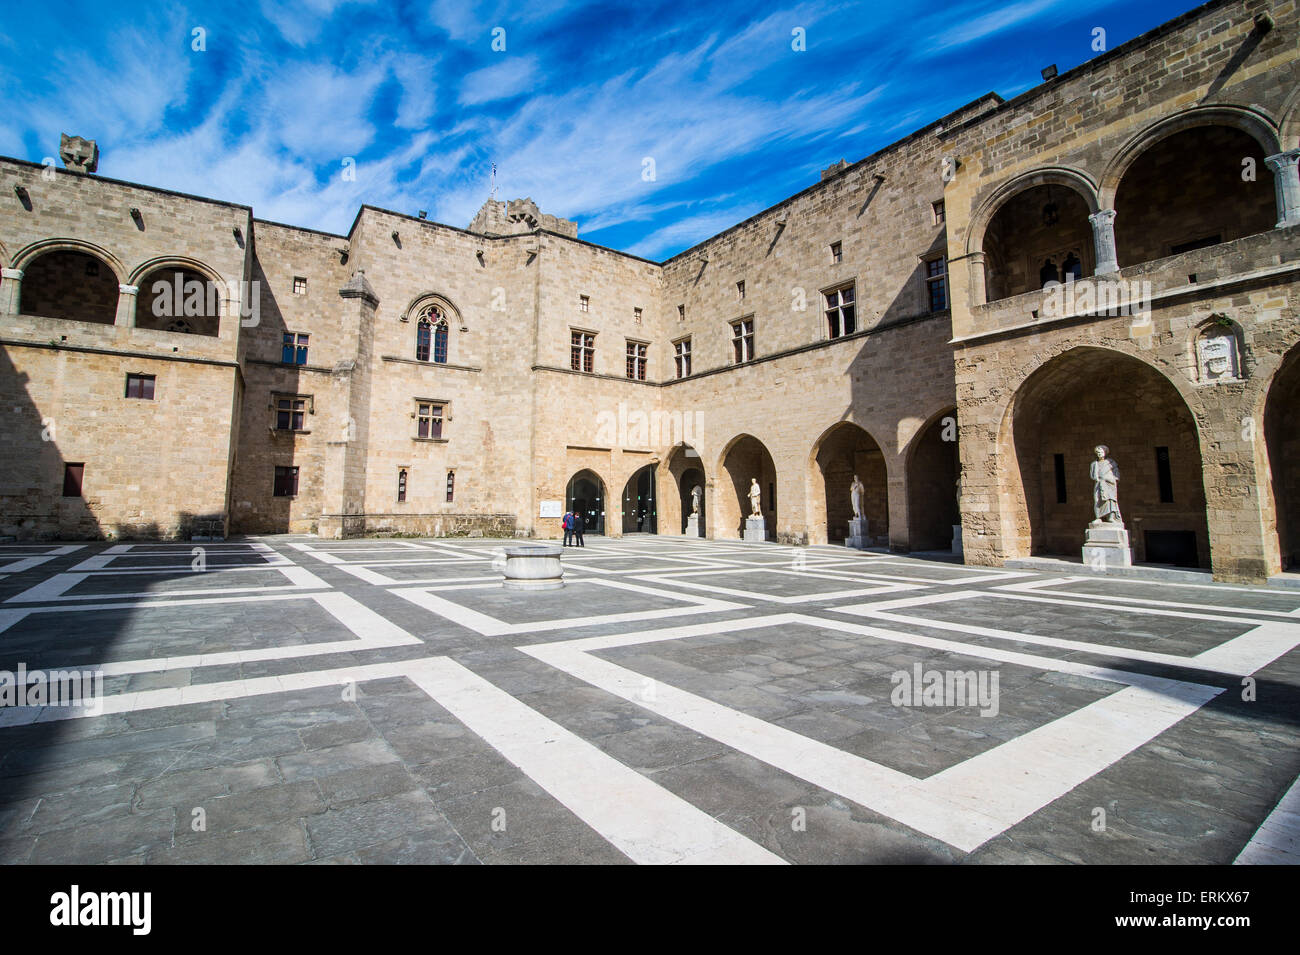 La Cour dans le palais du Grand Maître, la vieille ville médiévale de la ville de Rhodes, Rhodes, Dodécanèse, îles Grecques Banque D'Images